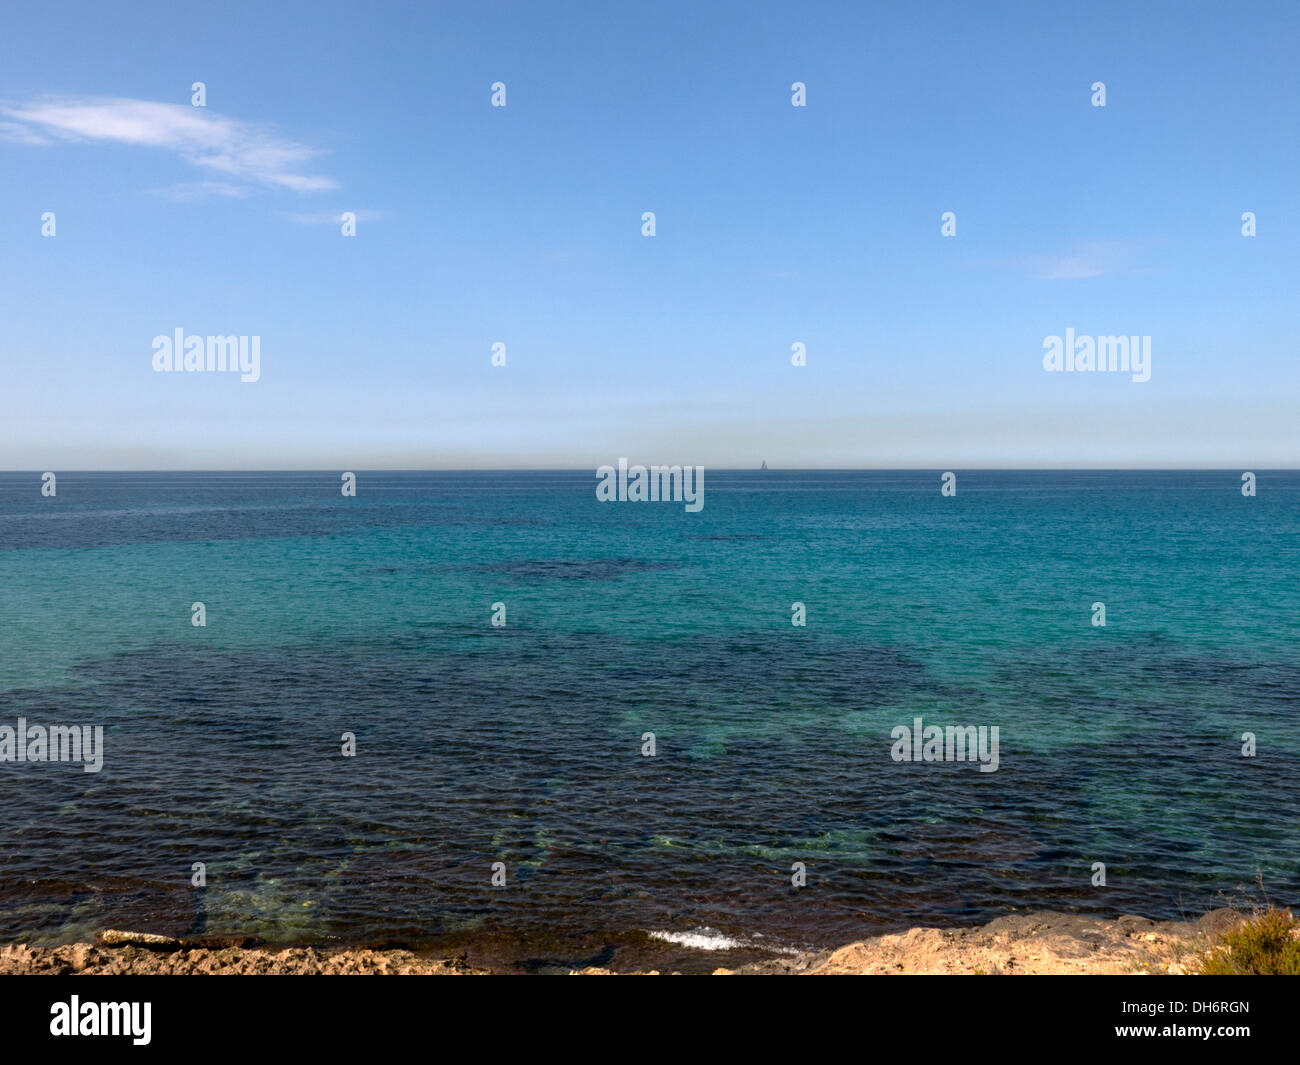 Mediterranean coast, Palma de Majorca, Balearic Islands, Spain Stock Photo